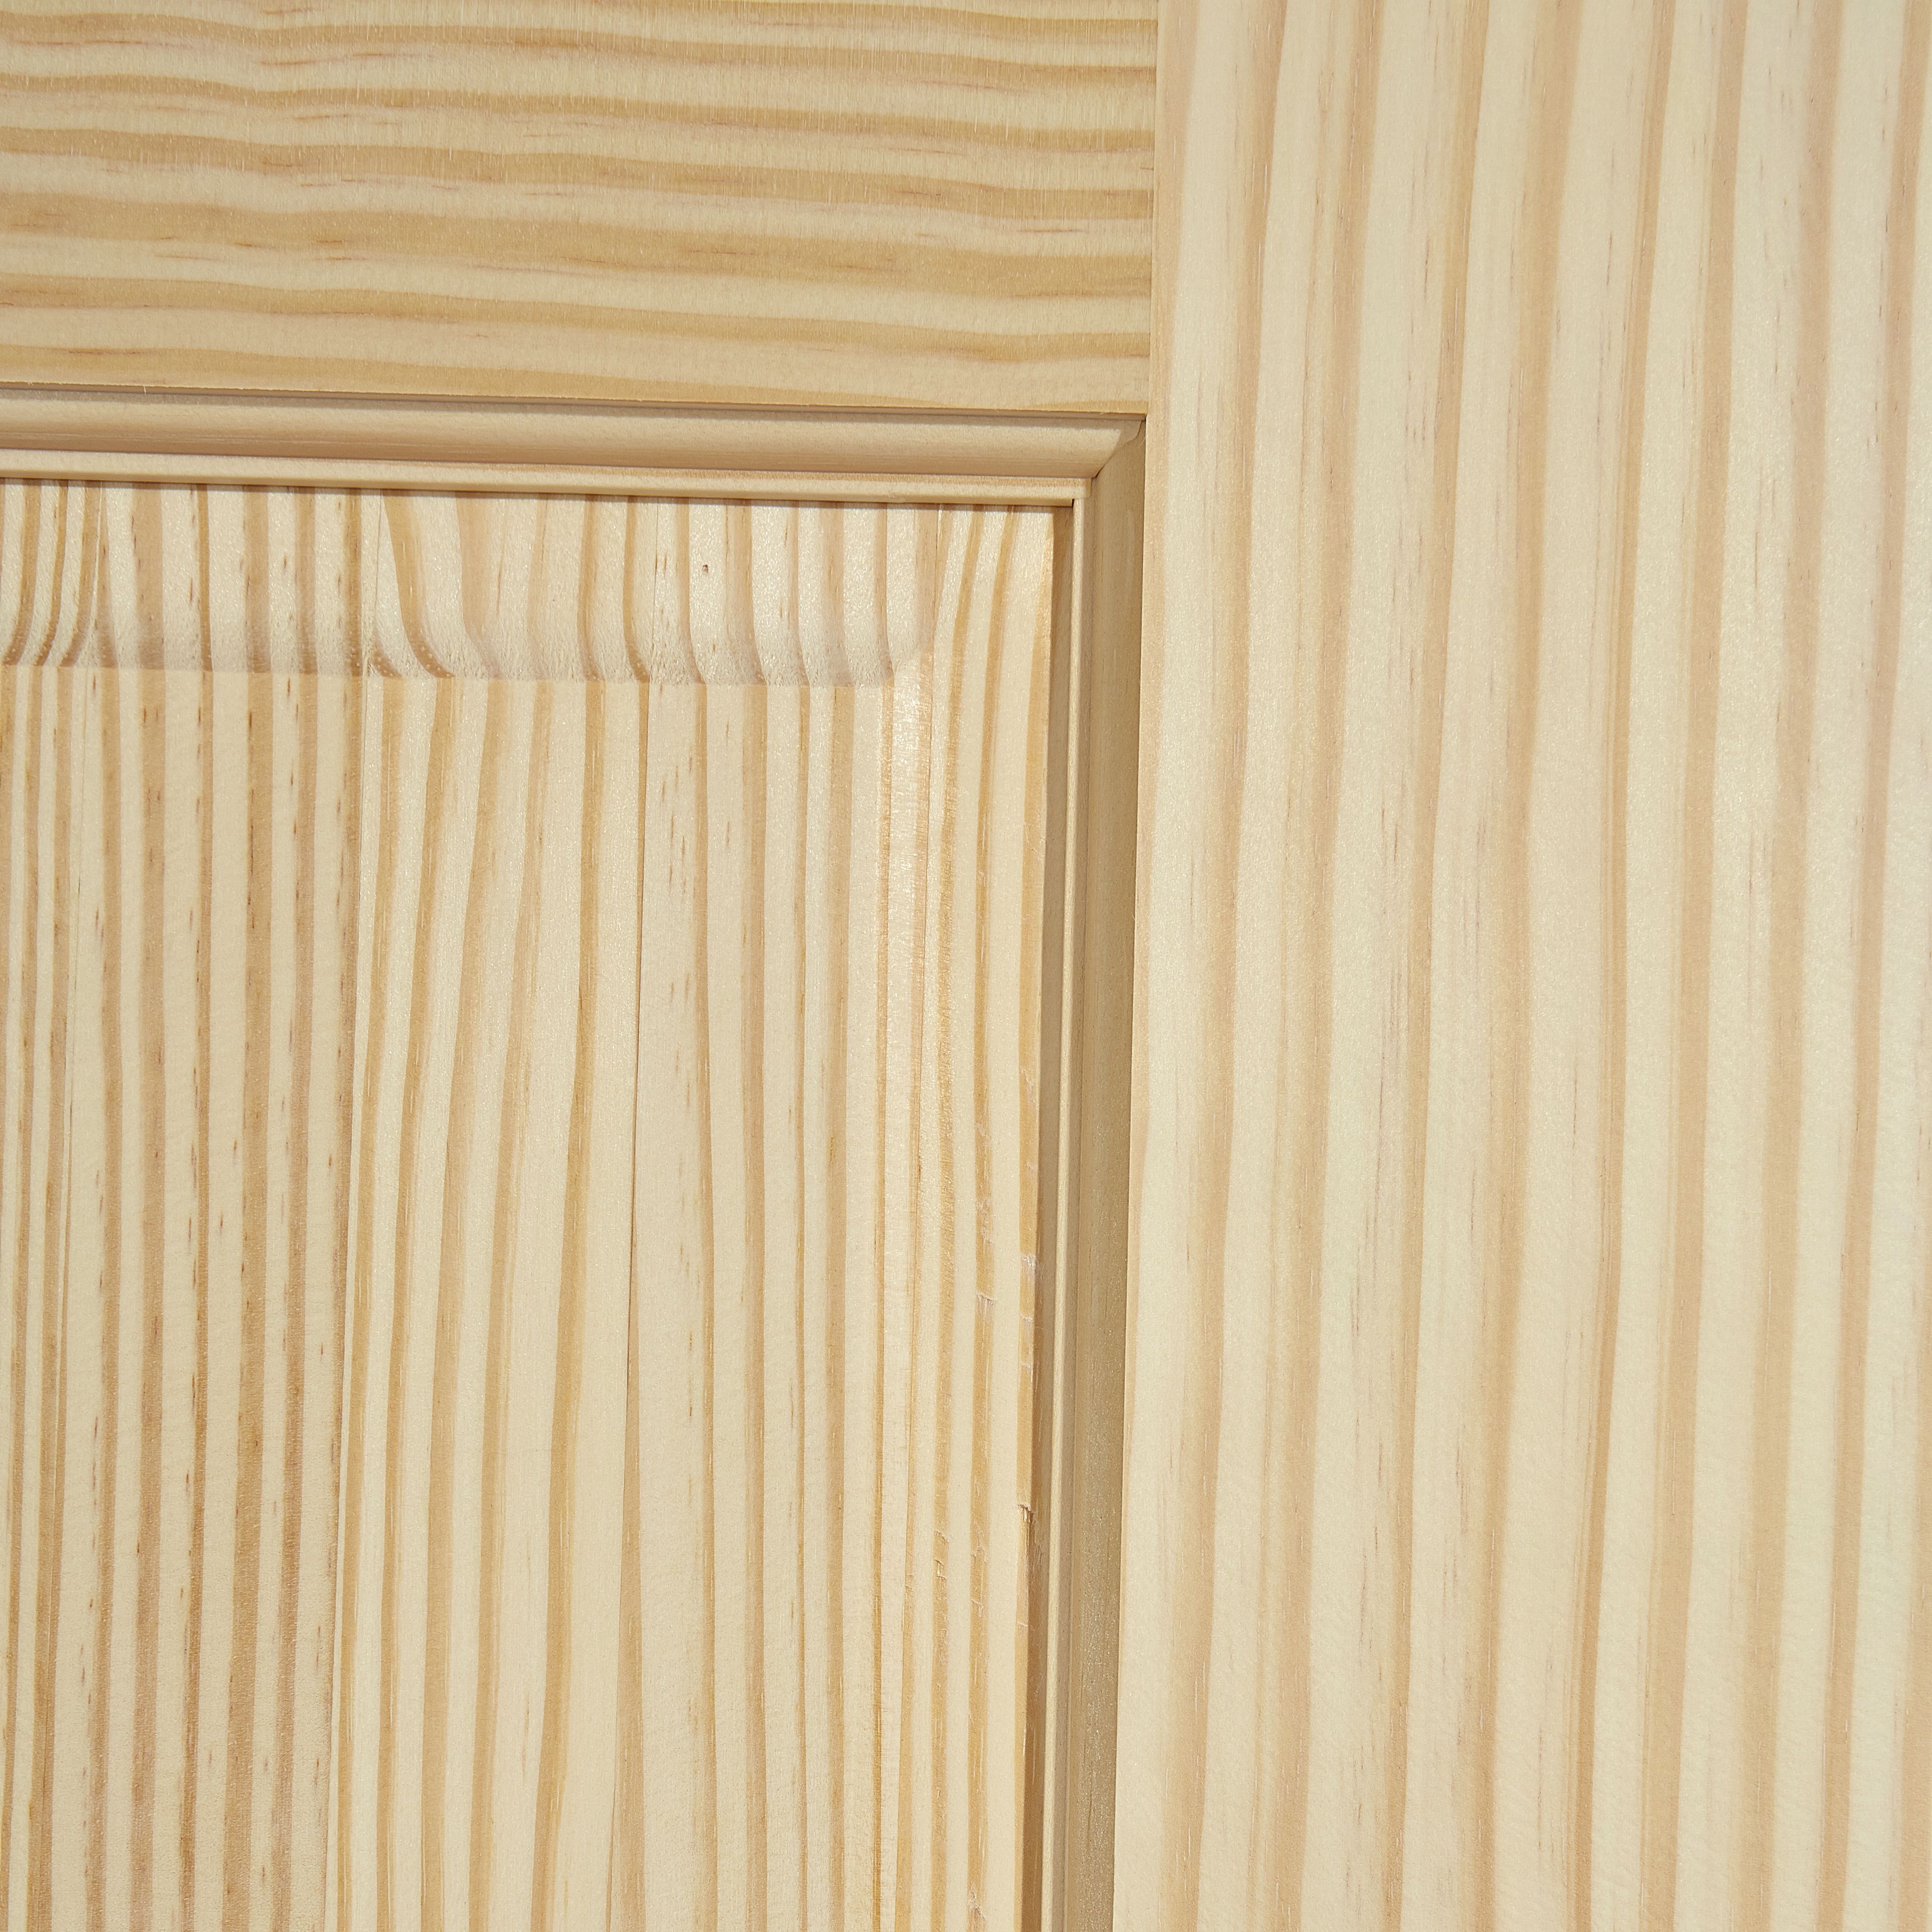 2 panel Unglazed Contemporary Pine veneer Internal Clear pine Door, (H)1981mm (W)838mm (T)35mm